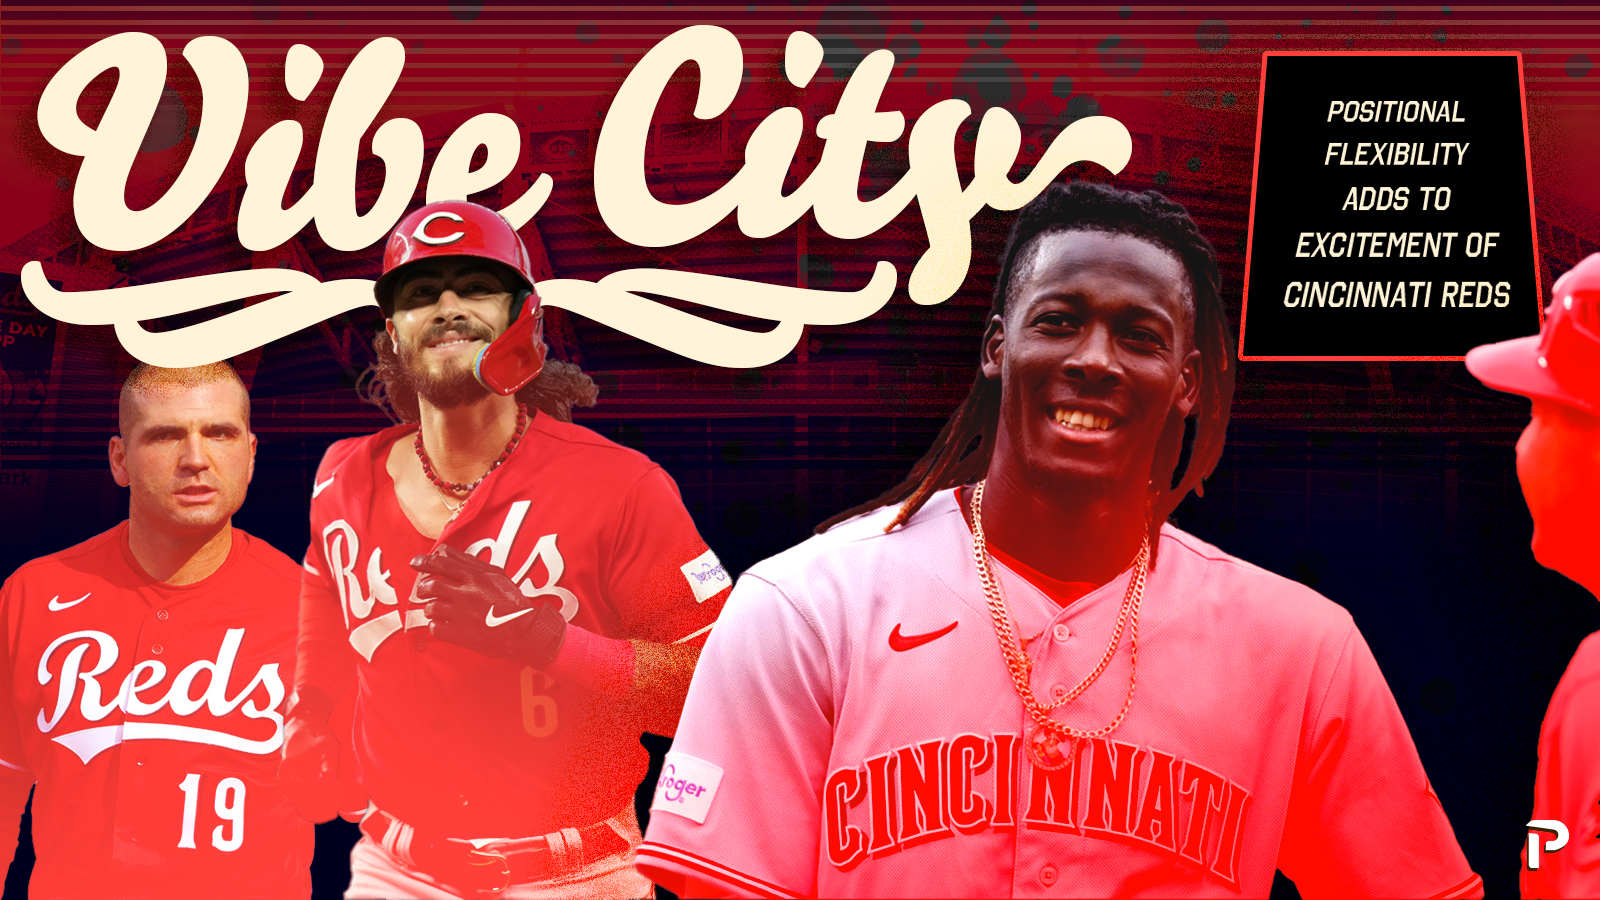 Cincinnati Reds Minor League roundup June 18